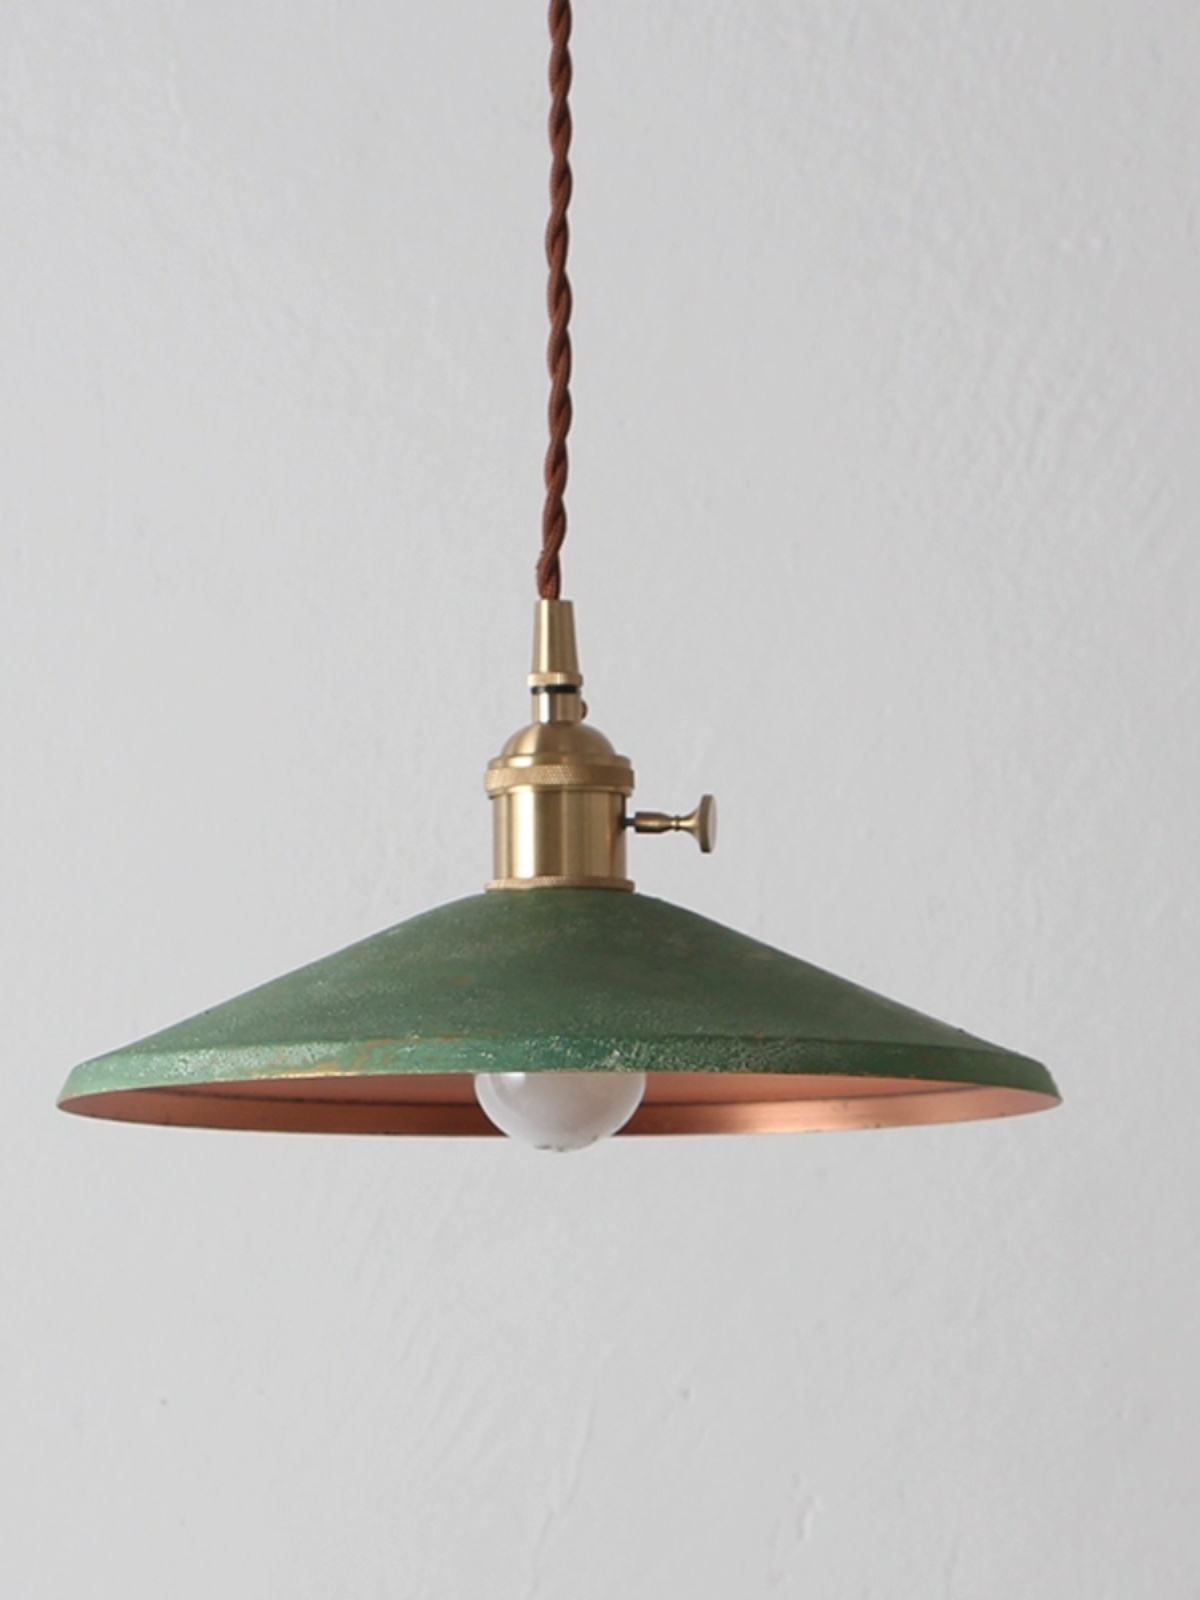 復古黃銅日式北歐風格吊燈 簡約創意吧檯玄關民宿床頭餐桌燈具